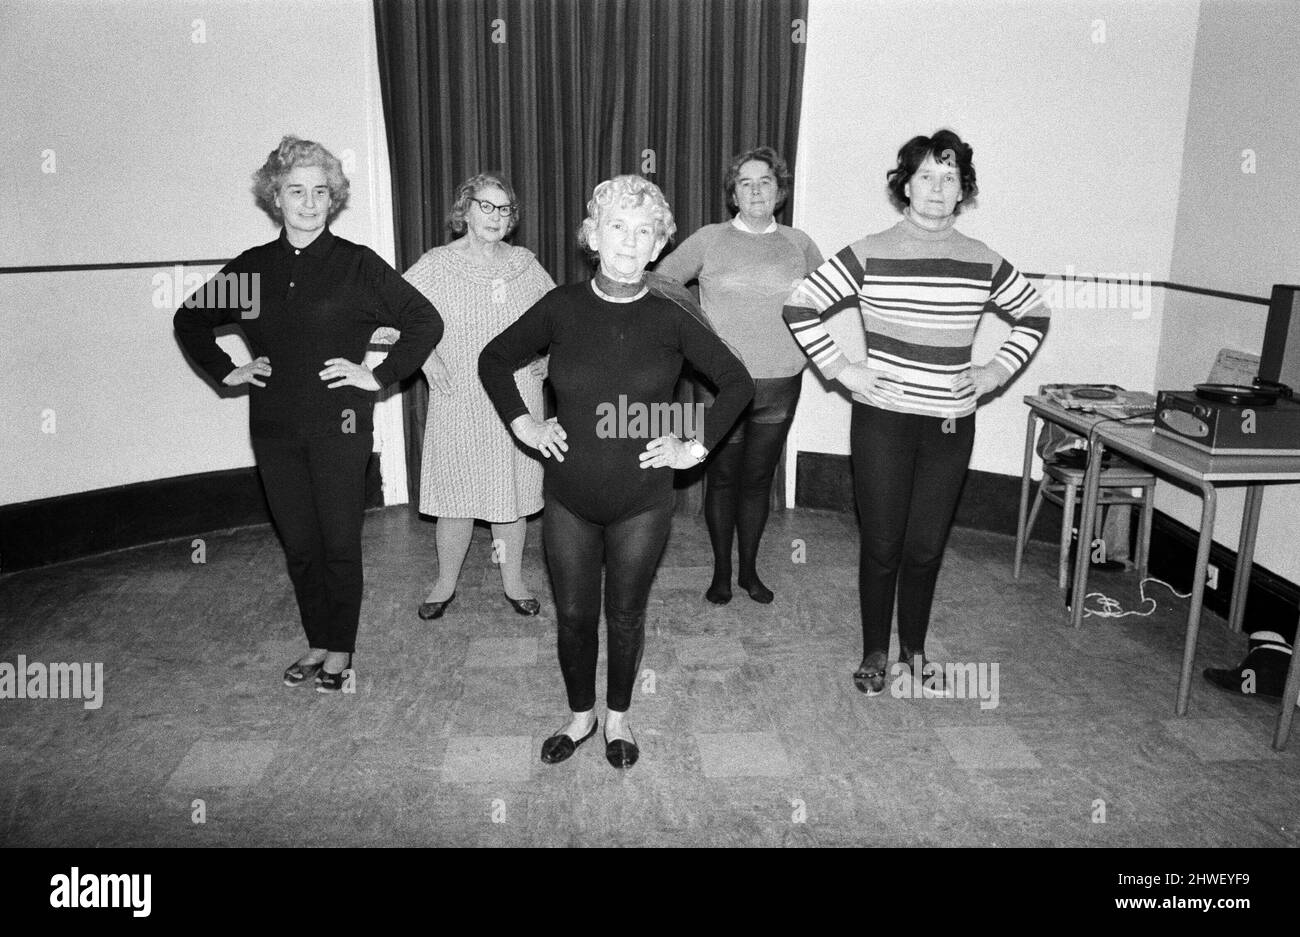 Cornwalls erstaunlichste Großmutter, Mrs Mary Wyatt (75 im April nächsten Jahres), tanzt sich in das neue Jahrzehnt der 1970s, bekleidet mit schwarzen Tanzstrumpfhosen, die einer Klasse von Frauen zeigen, wie sie energische und athletische Arm- und Beinstrecken zur Musik machen. Frau Wyatt hielt ihre erste Keep Fit-Klasse der 1970s in den Gemeinschaftsräumen im Guildhall in St. Ives, Cornwall. 2.. Januar 1970.Cornwalls erstaunlichste Großmutter, Mrs Mary Wyatt (75 im April nächsten Jahres), tanzt sich in das neue Jahrzehnt der 1970s, bekleidet mit schwarzen Tanzstrumpfhosen, die einer Klasse von Frauen zeigen, wie sie energische und athletische Arm- und Beinstrecken bis zum Mus machen Stockfoto